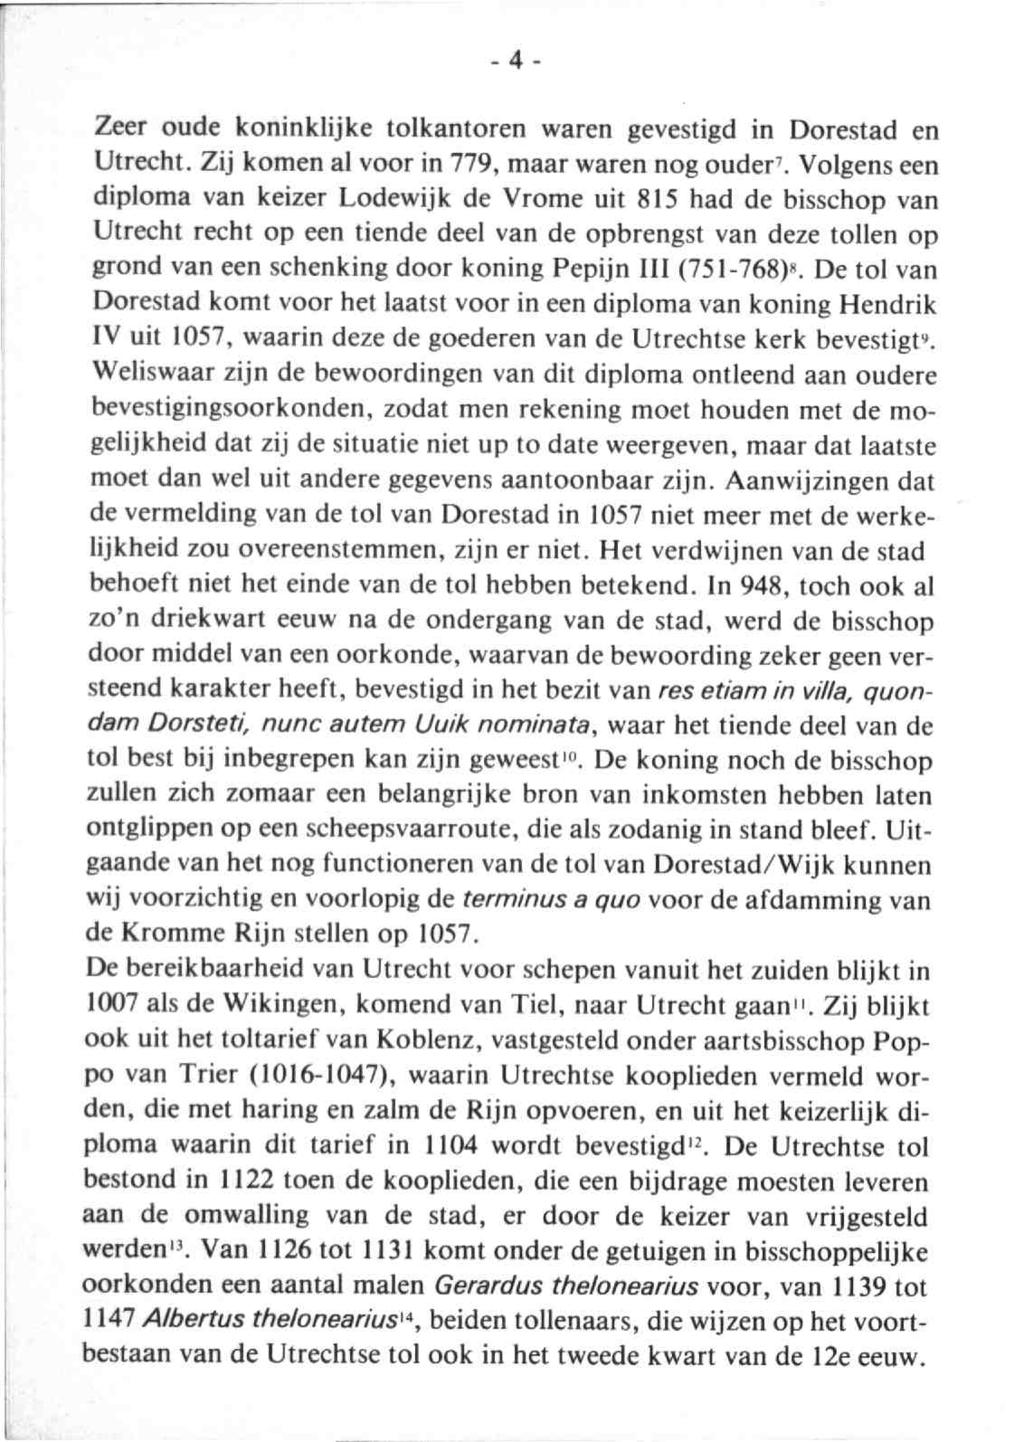 Tussen Rijn en Lek 1981 3. - Dl.15 3 Zeer oude koninklijke tolkantoren waren gevestigd in Dorestad enutrecht. Zij komen al voor in 779, maar waren nog ouder'.